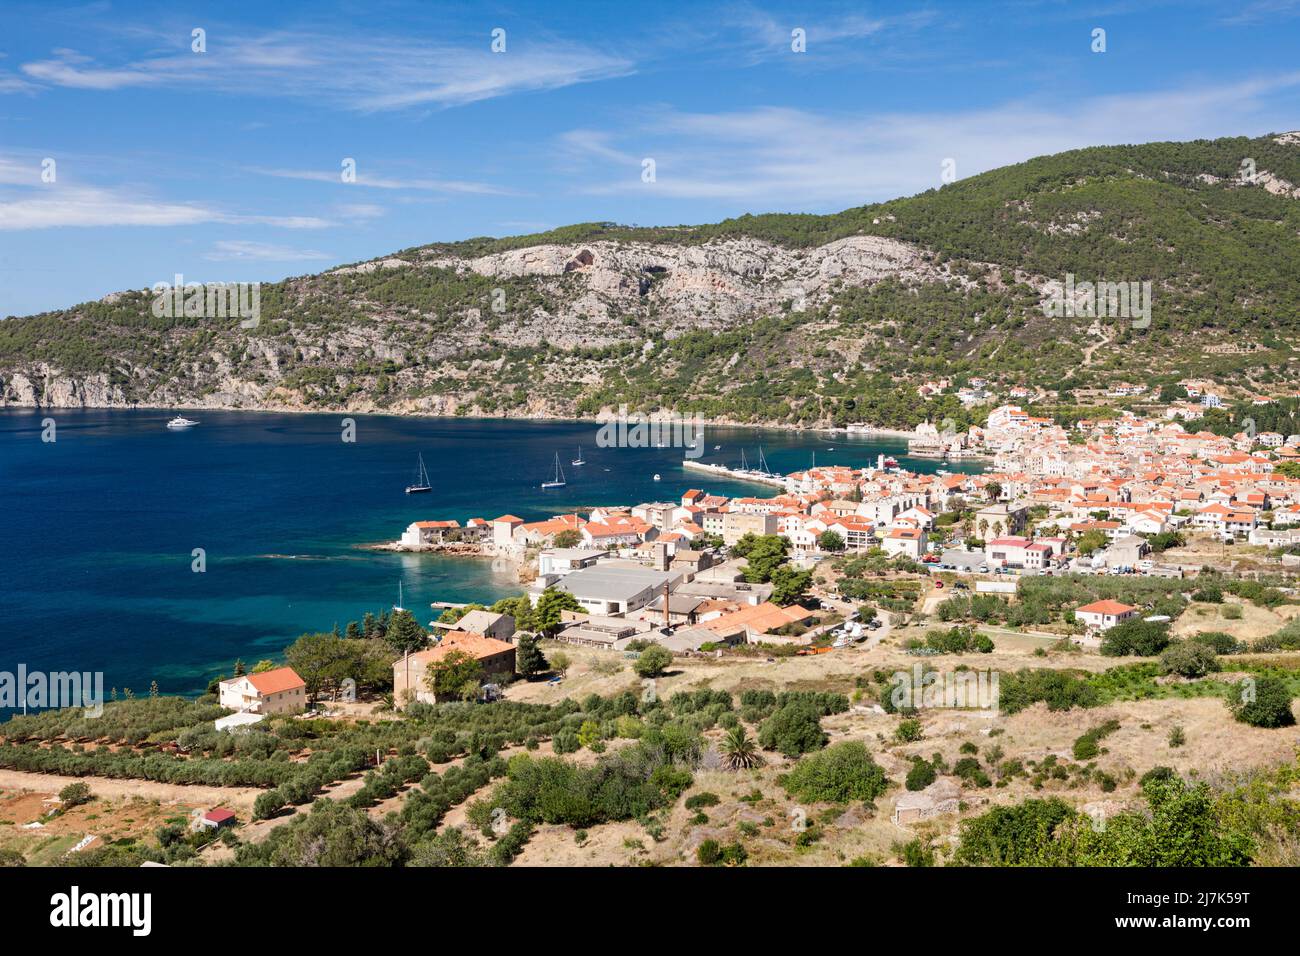 Ciudad y bahía de Komiza, Isla Vis, Mar Mediterráneo, Croacia Foto de stock